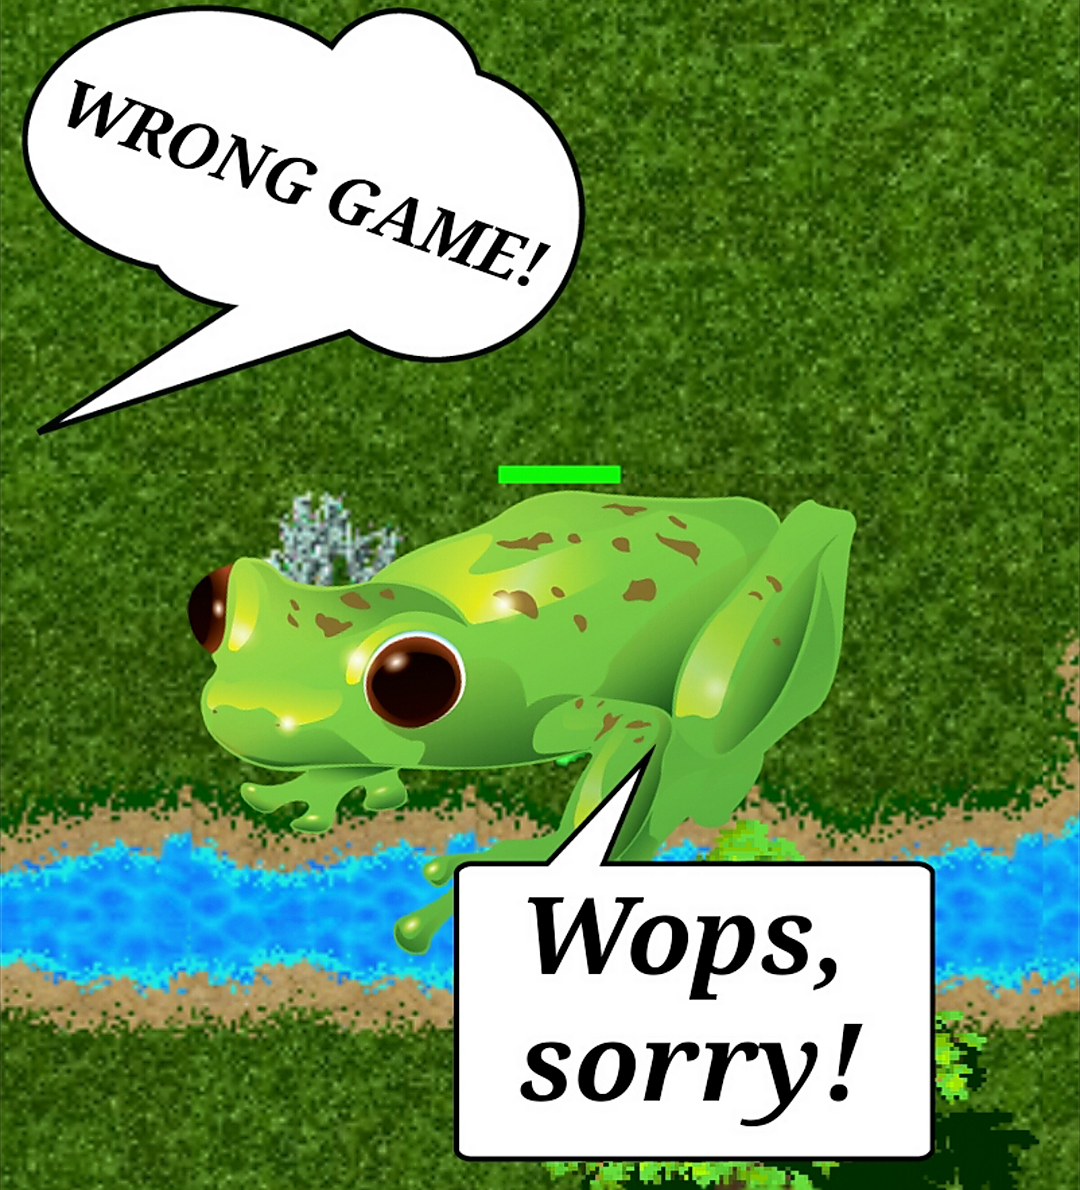 Wrong Game!